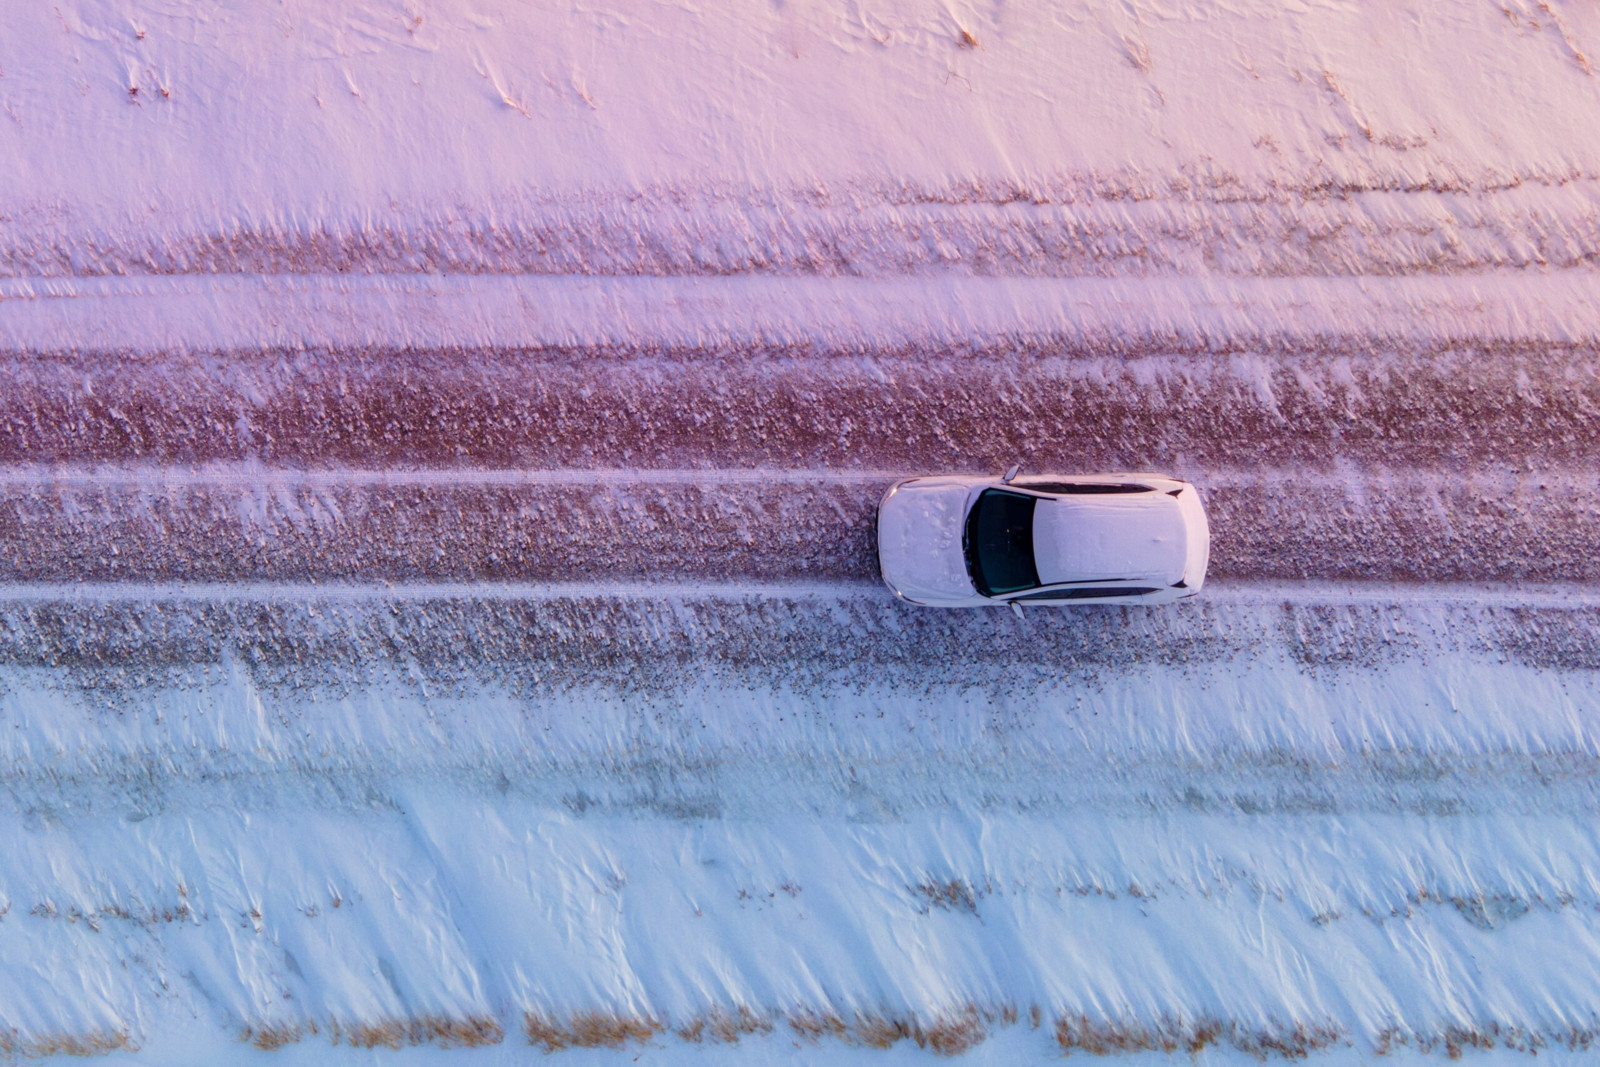 Die Fahrt über winterliche Straßen setzt dem Rostschutz stark zu – die Kombination aus Salz und Wasser fördert die Korrosion immens.